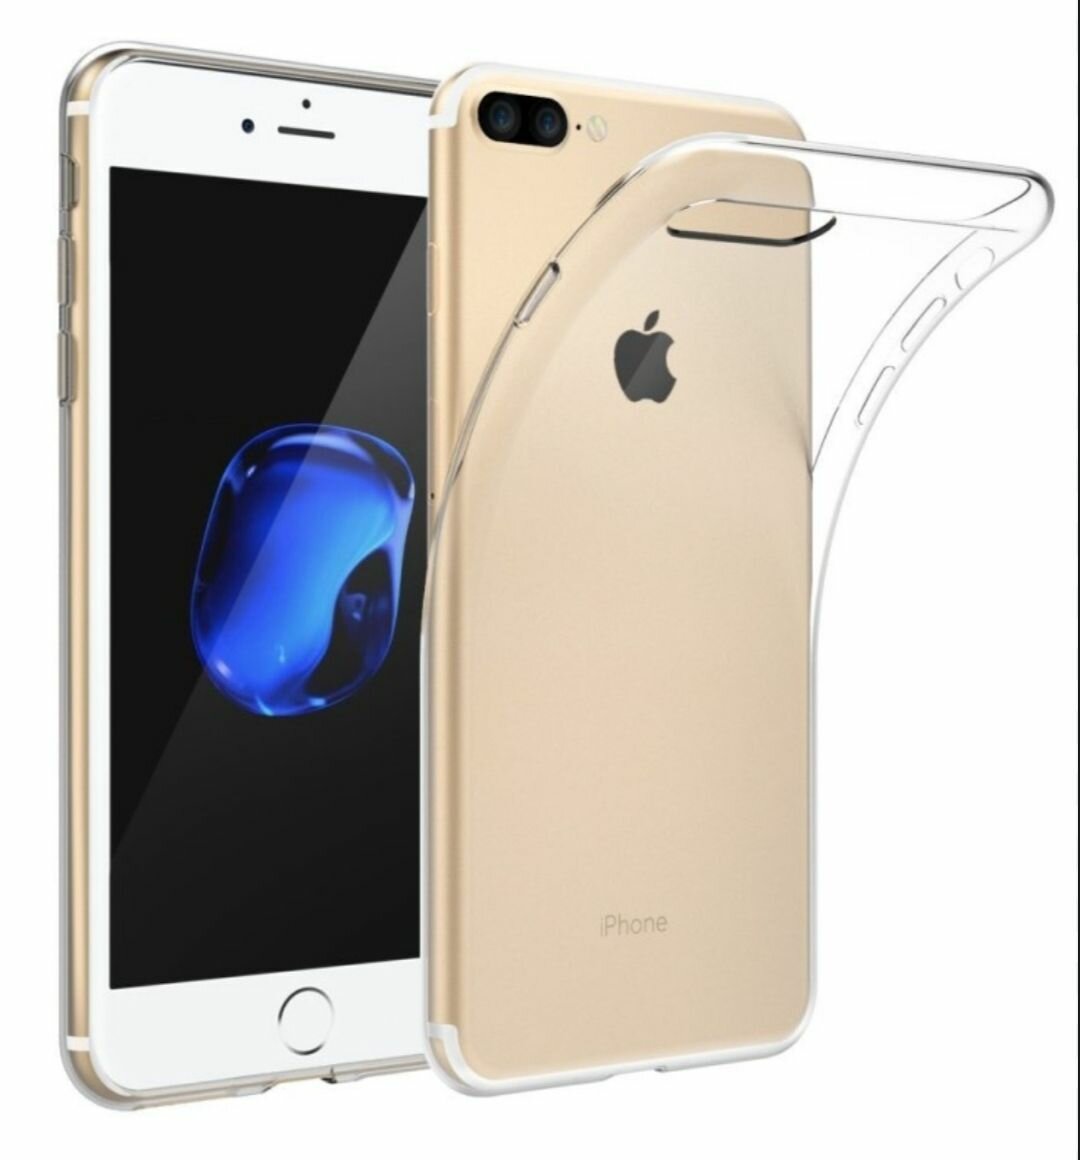 Apple iPhone 7 plus / 8 plus силиконовый прозрачный чехол, эпл айфон 7 плюс 8+ 7+